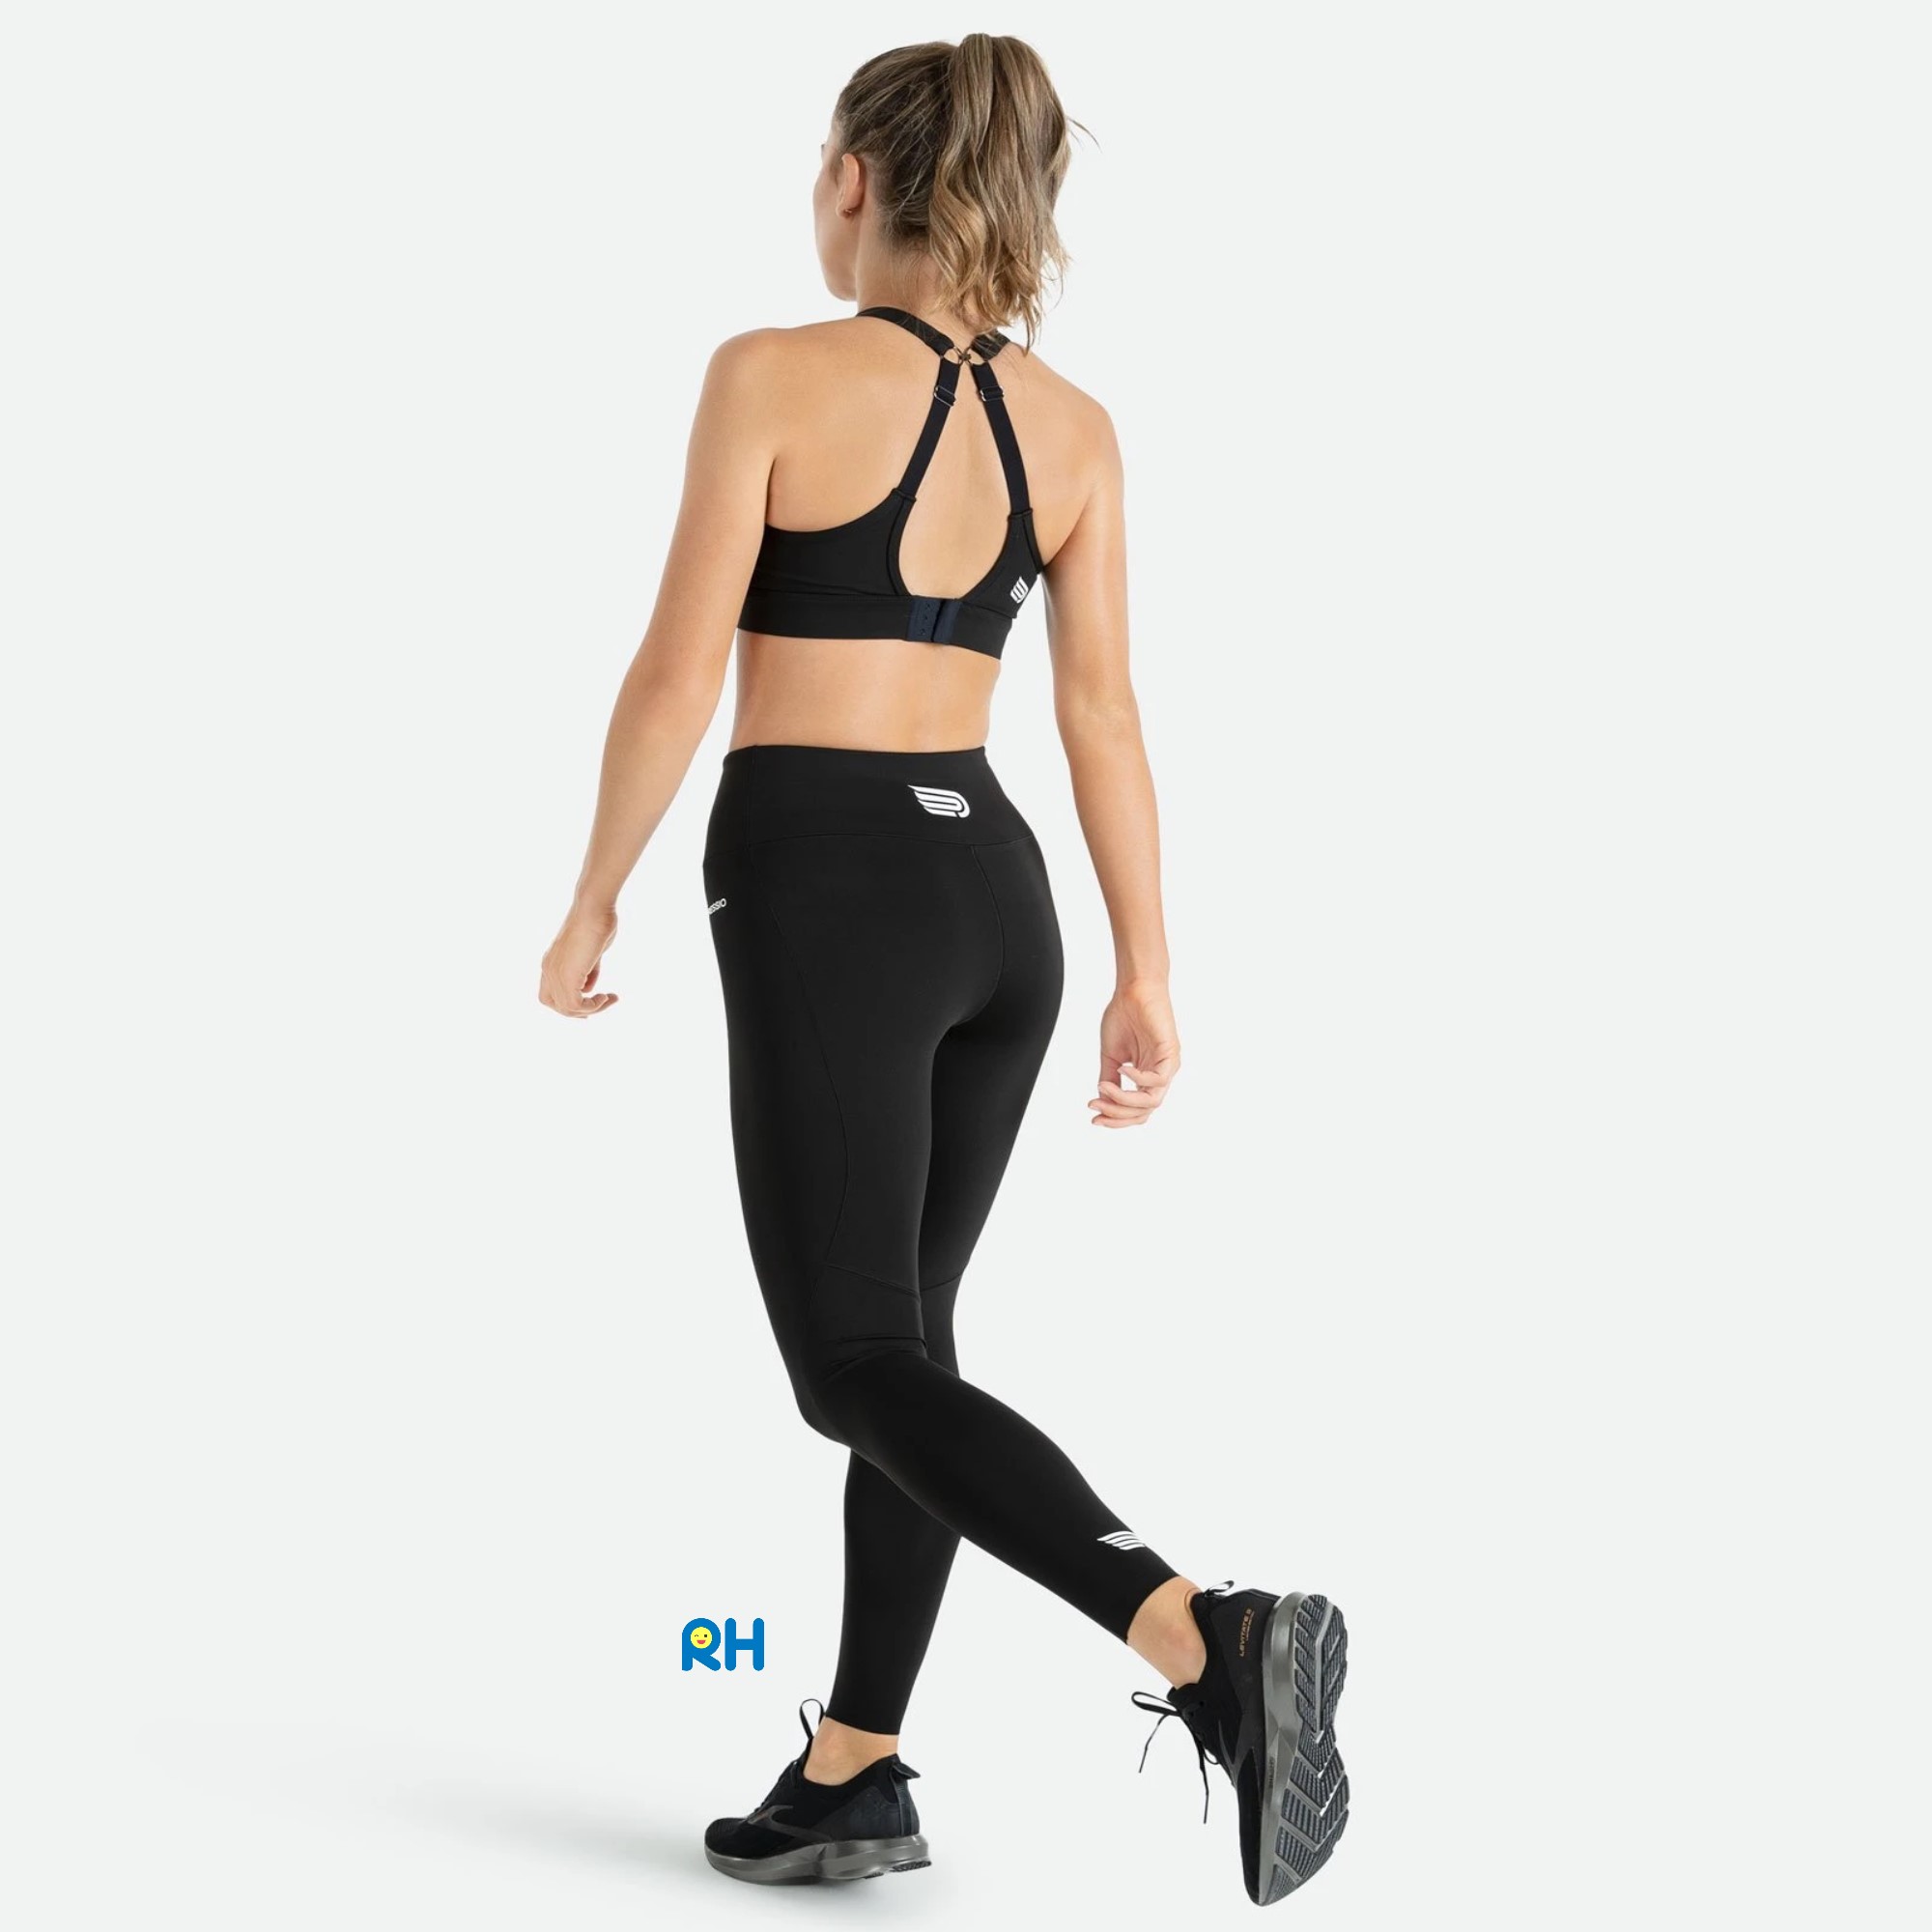 Solaire Women's Black Athletic Compression Workout Gym Yoga Capris Pants  Shorts